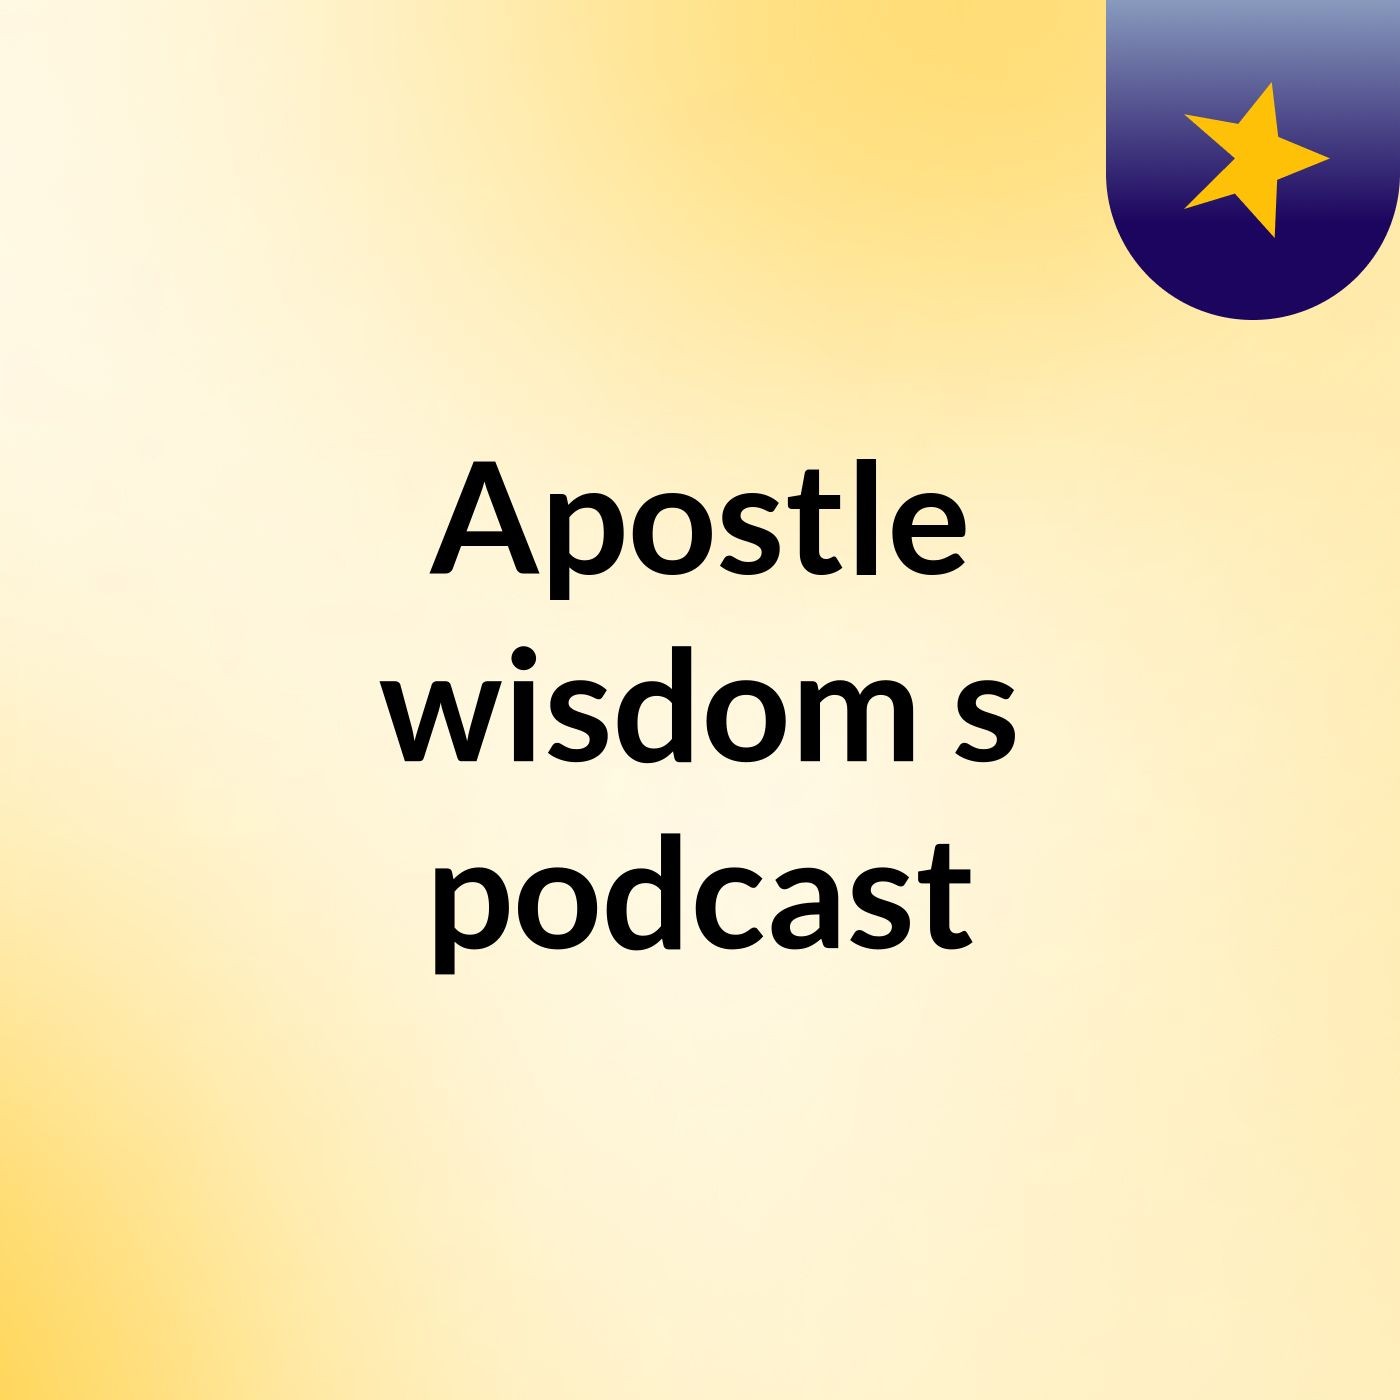 Episode 3 - Apostle wisdom's podcast